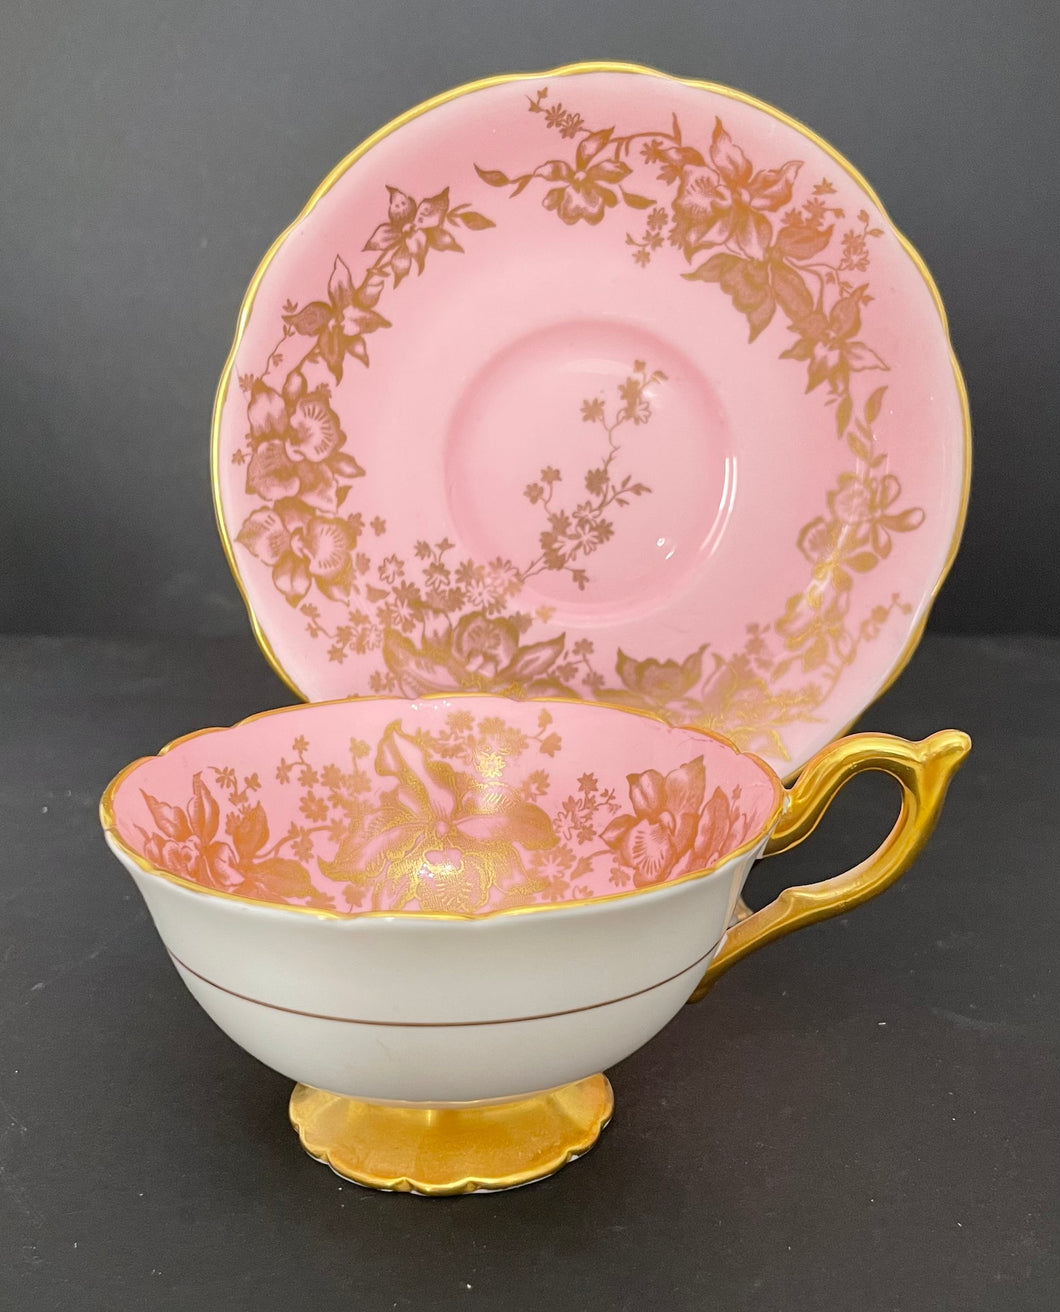 Vintage Coalport Bone China Pink and Gold Porcelain Teacup & Saucer